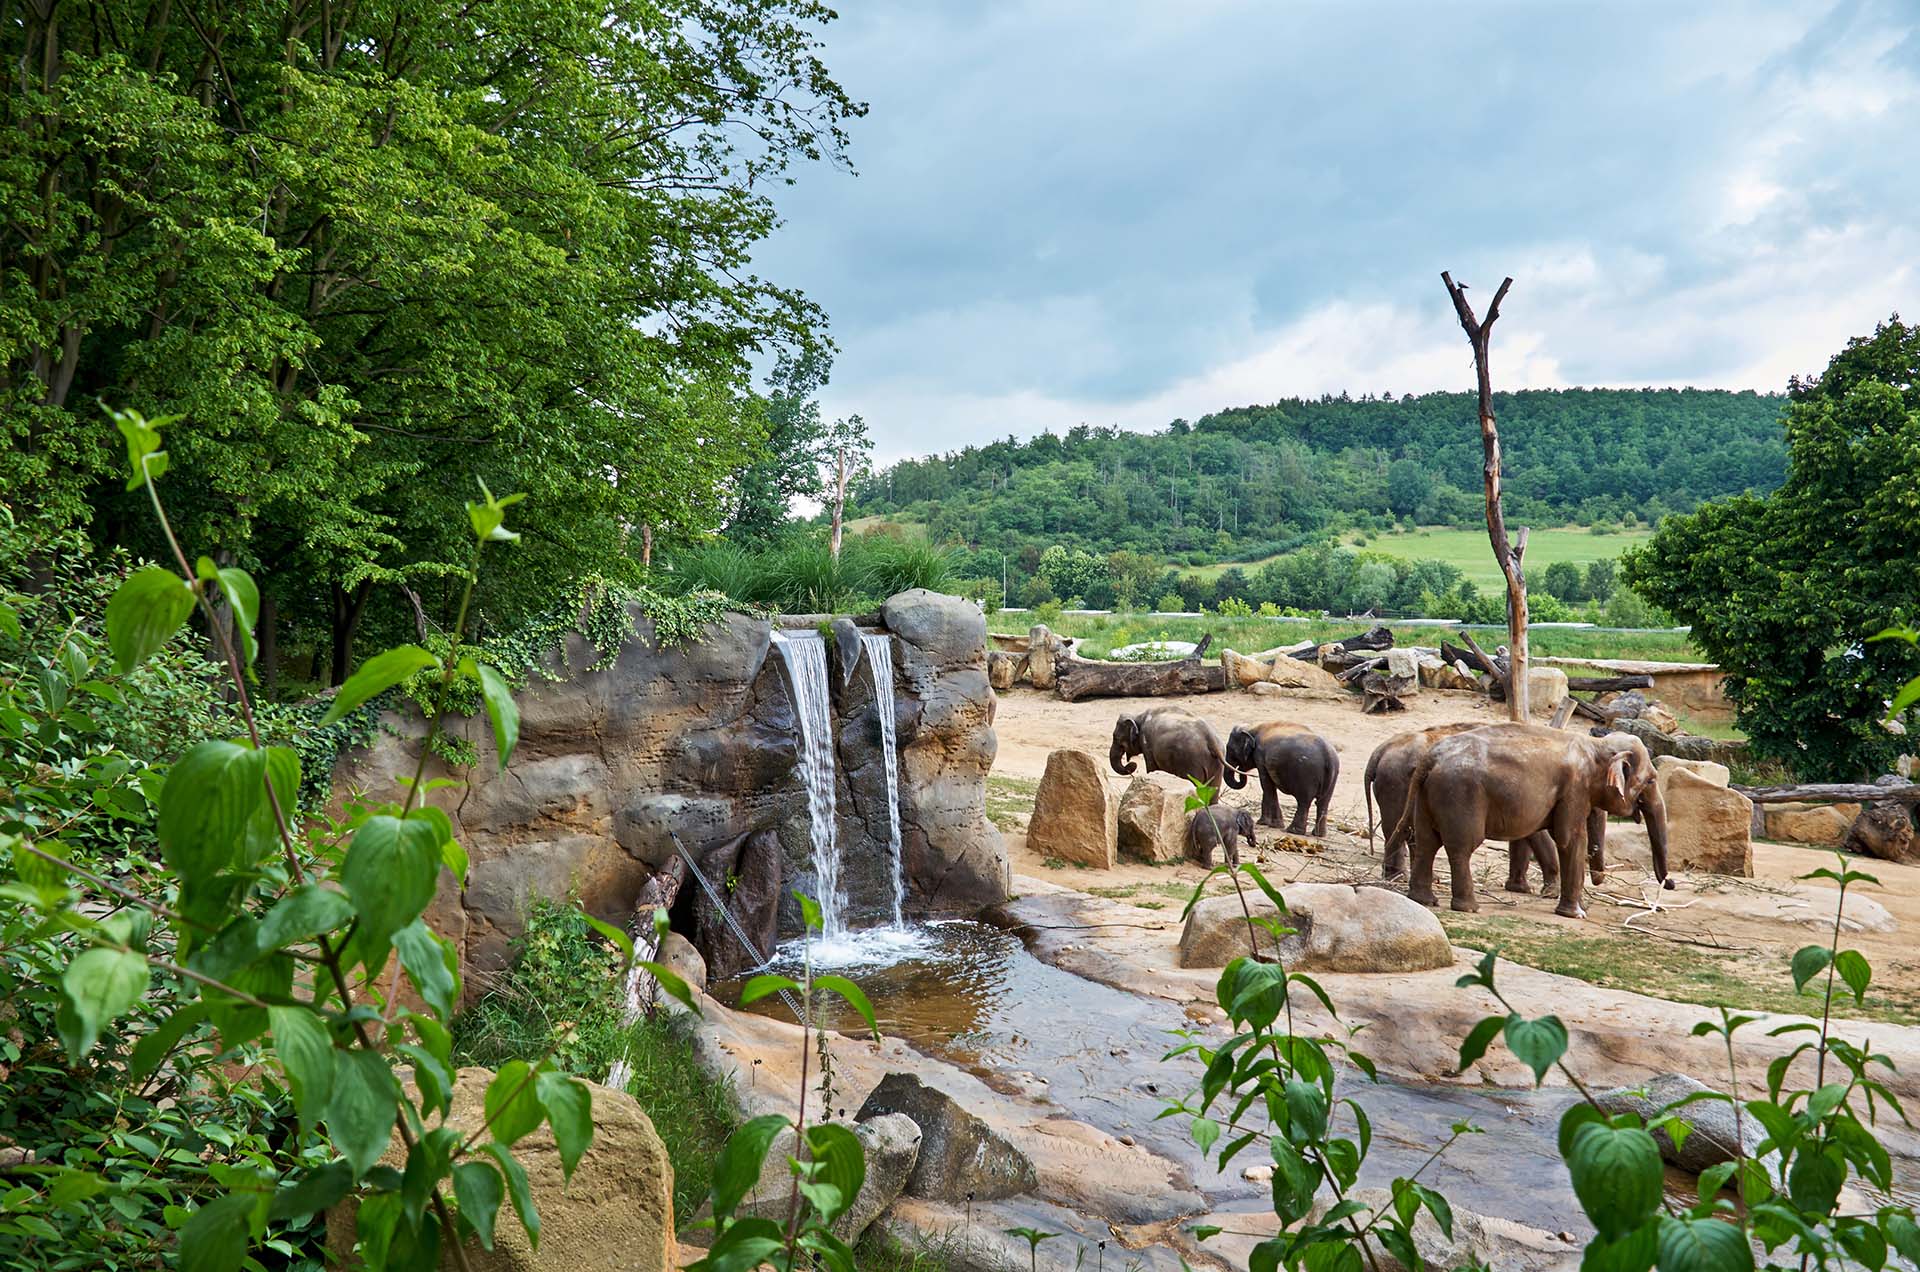 Czech Republic. Prague. Prague Zoo. Elephant and waterfall. June 12, 2016